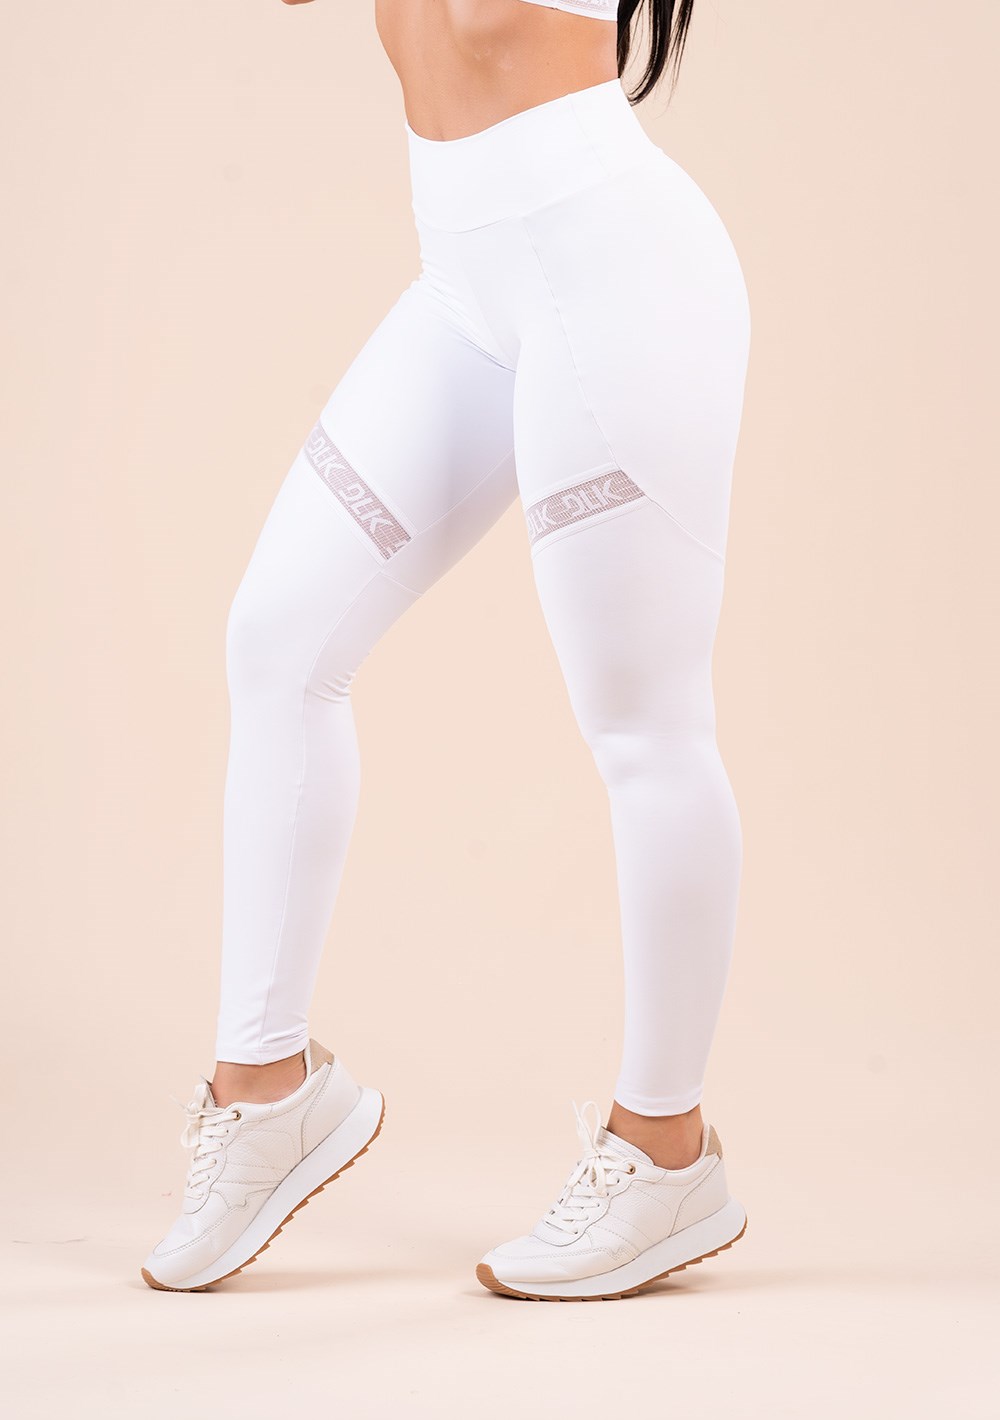 Legging fitness feminina branca com recorte e elástico vazado action